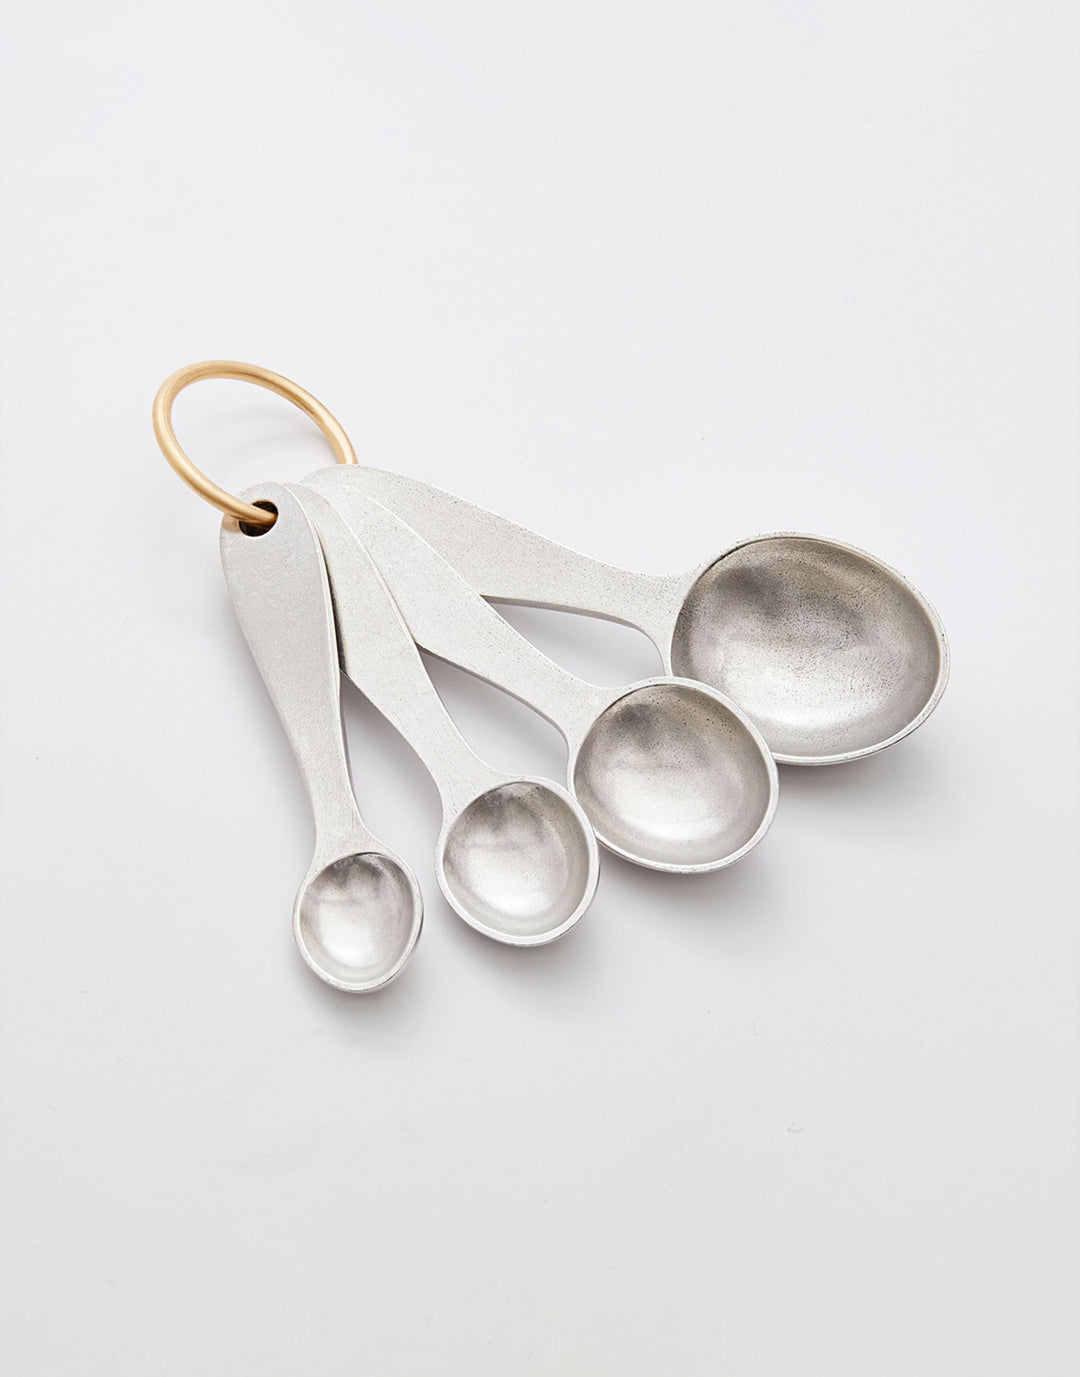 Handmade Pewter Measuring Spoons